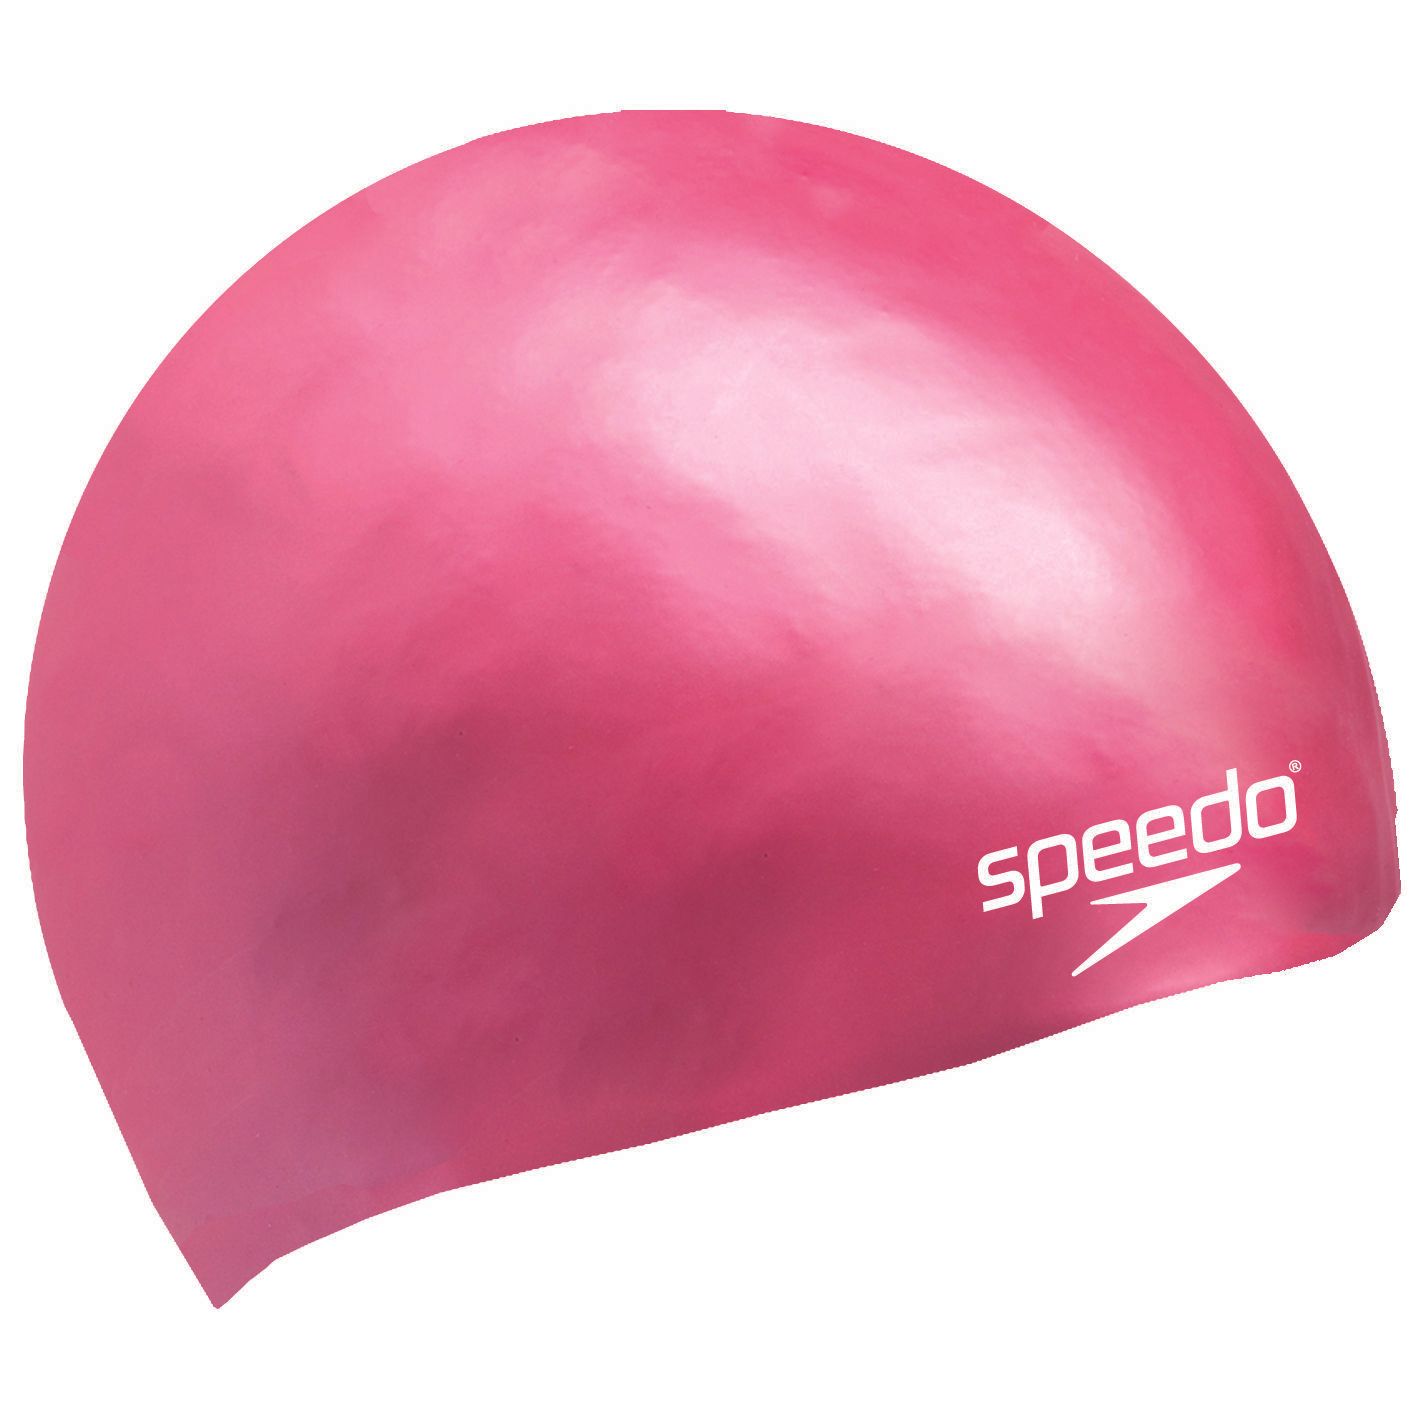  Speedo - Nón Bơi Trẻ Em Plain Moulded Silicone Junior (Hồng) Chống Thấm Nước 